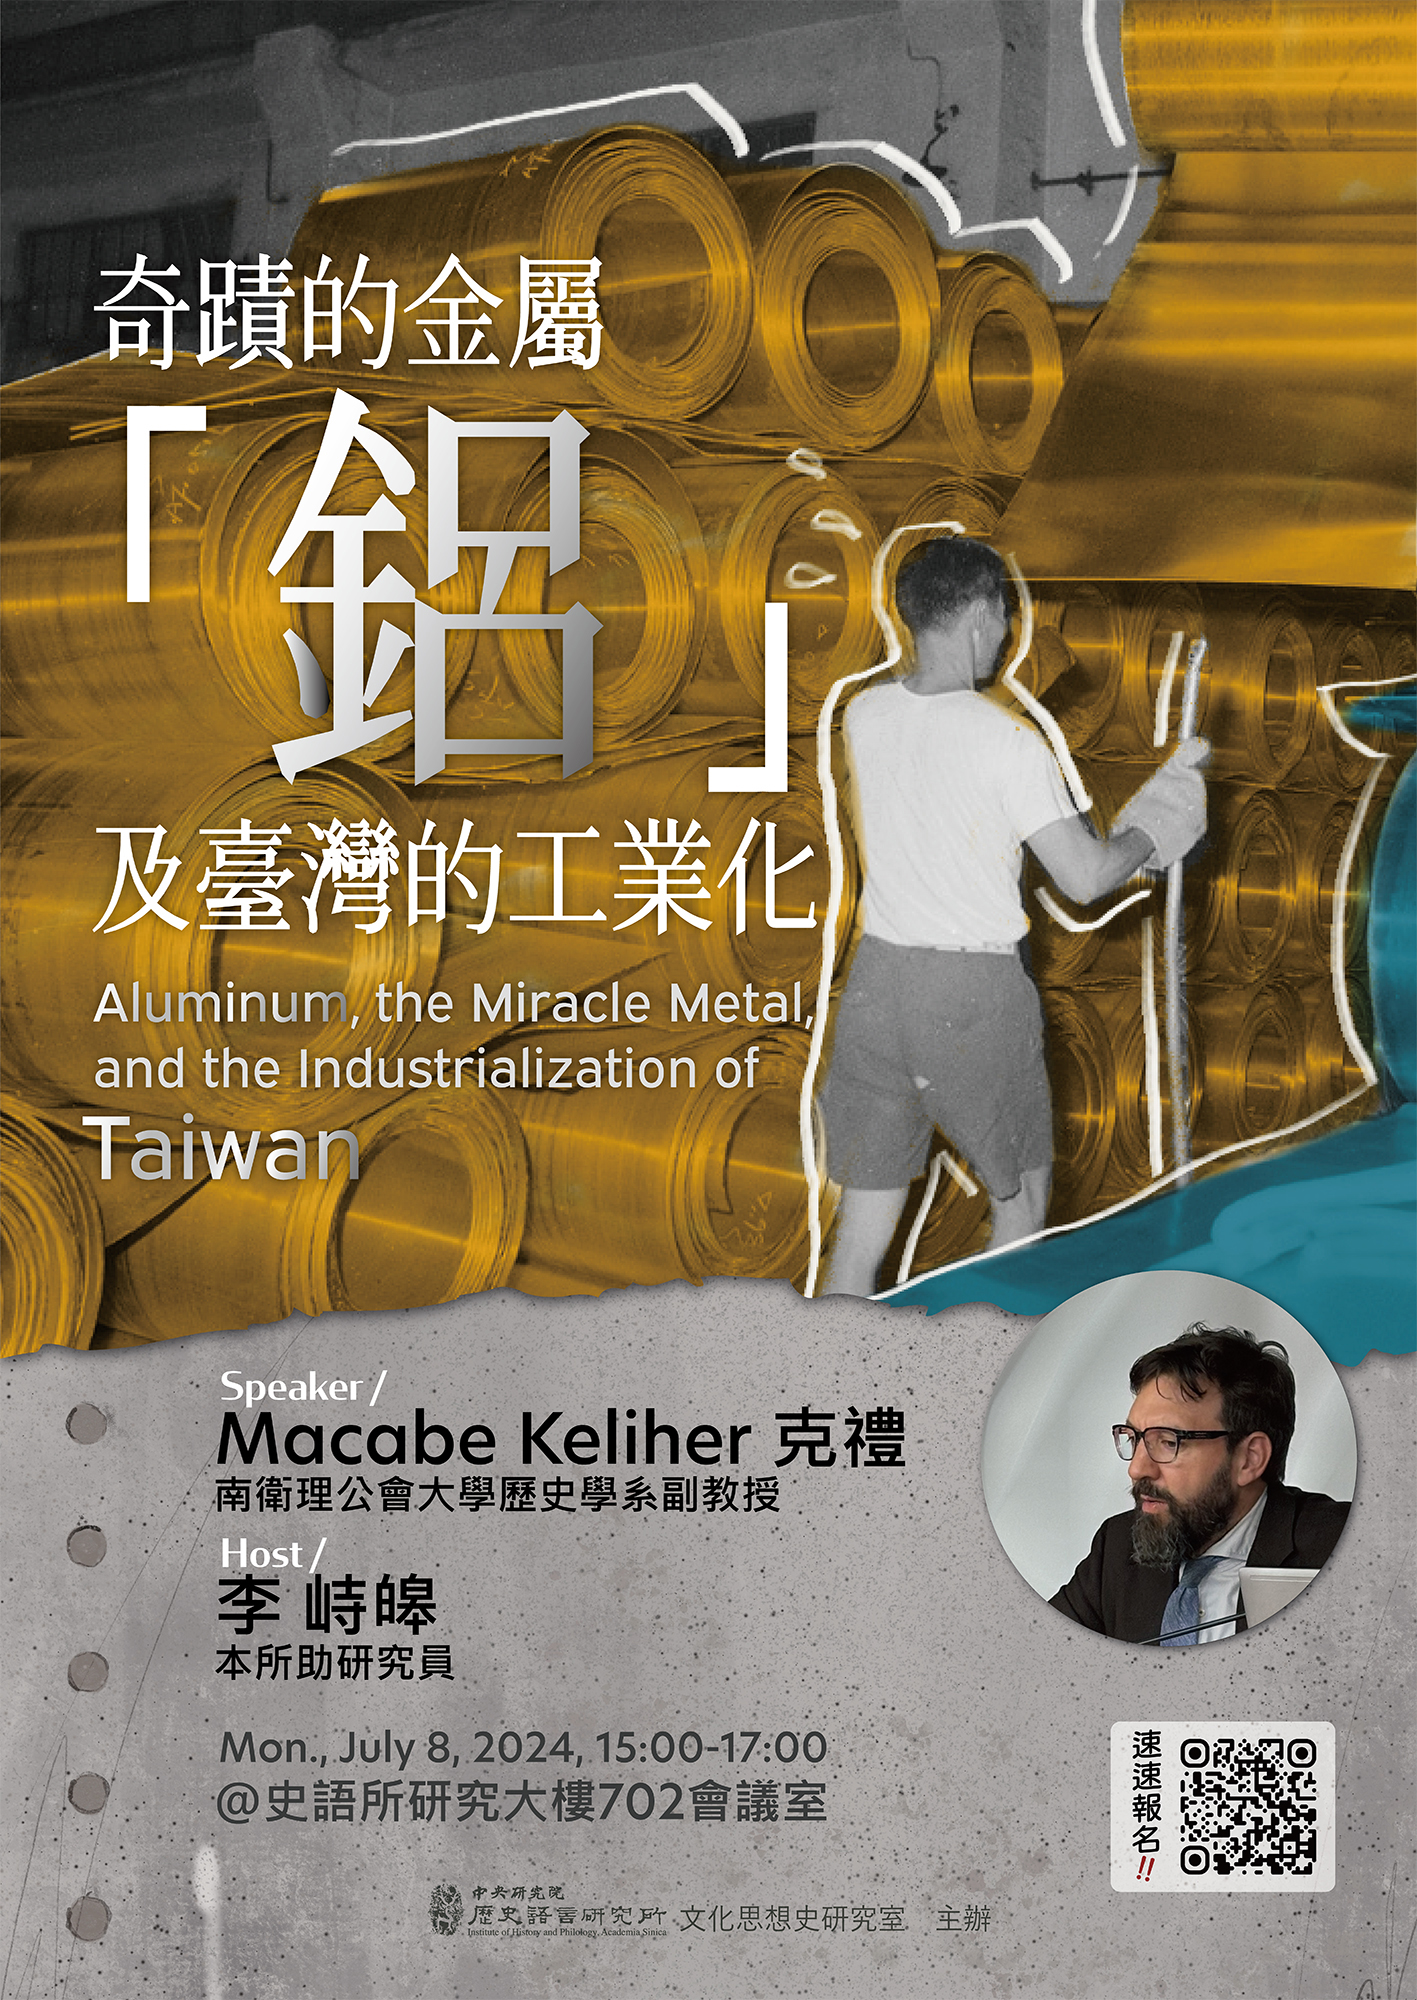 奇蹟的金屬「鋁」及台灣的工業化